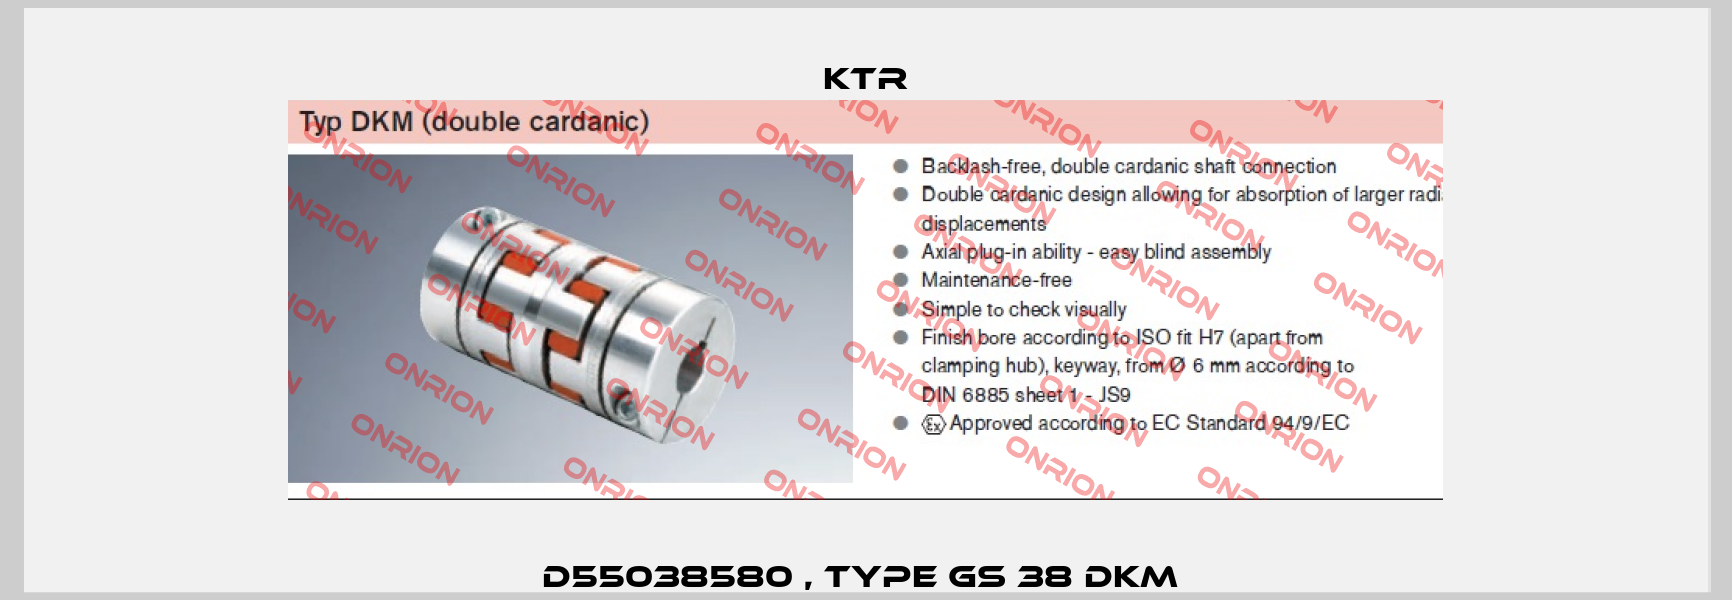 D55038580 , type GS 38 DKM  KTR